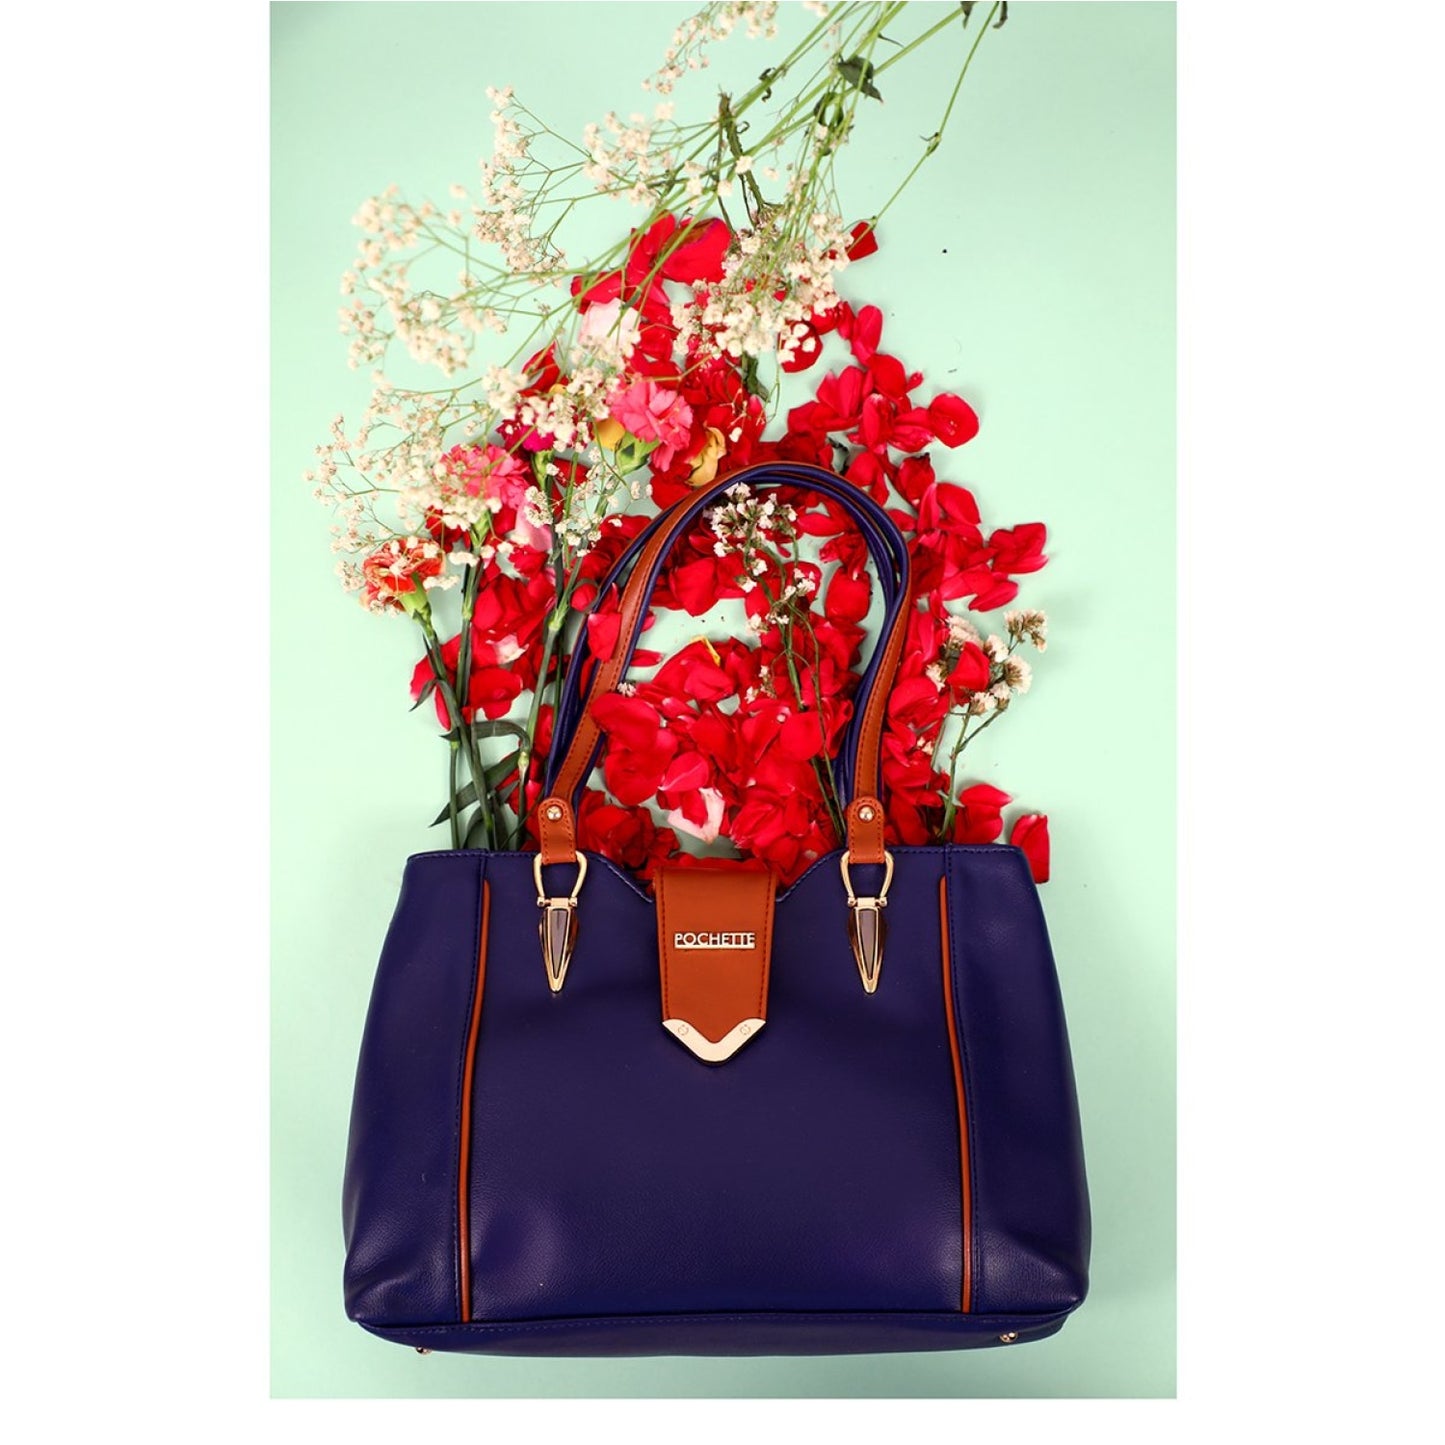 Pochette Midnight Blue Handbag. - HANDBAGS